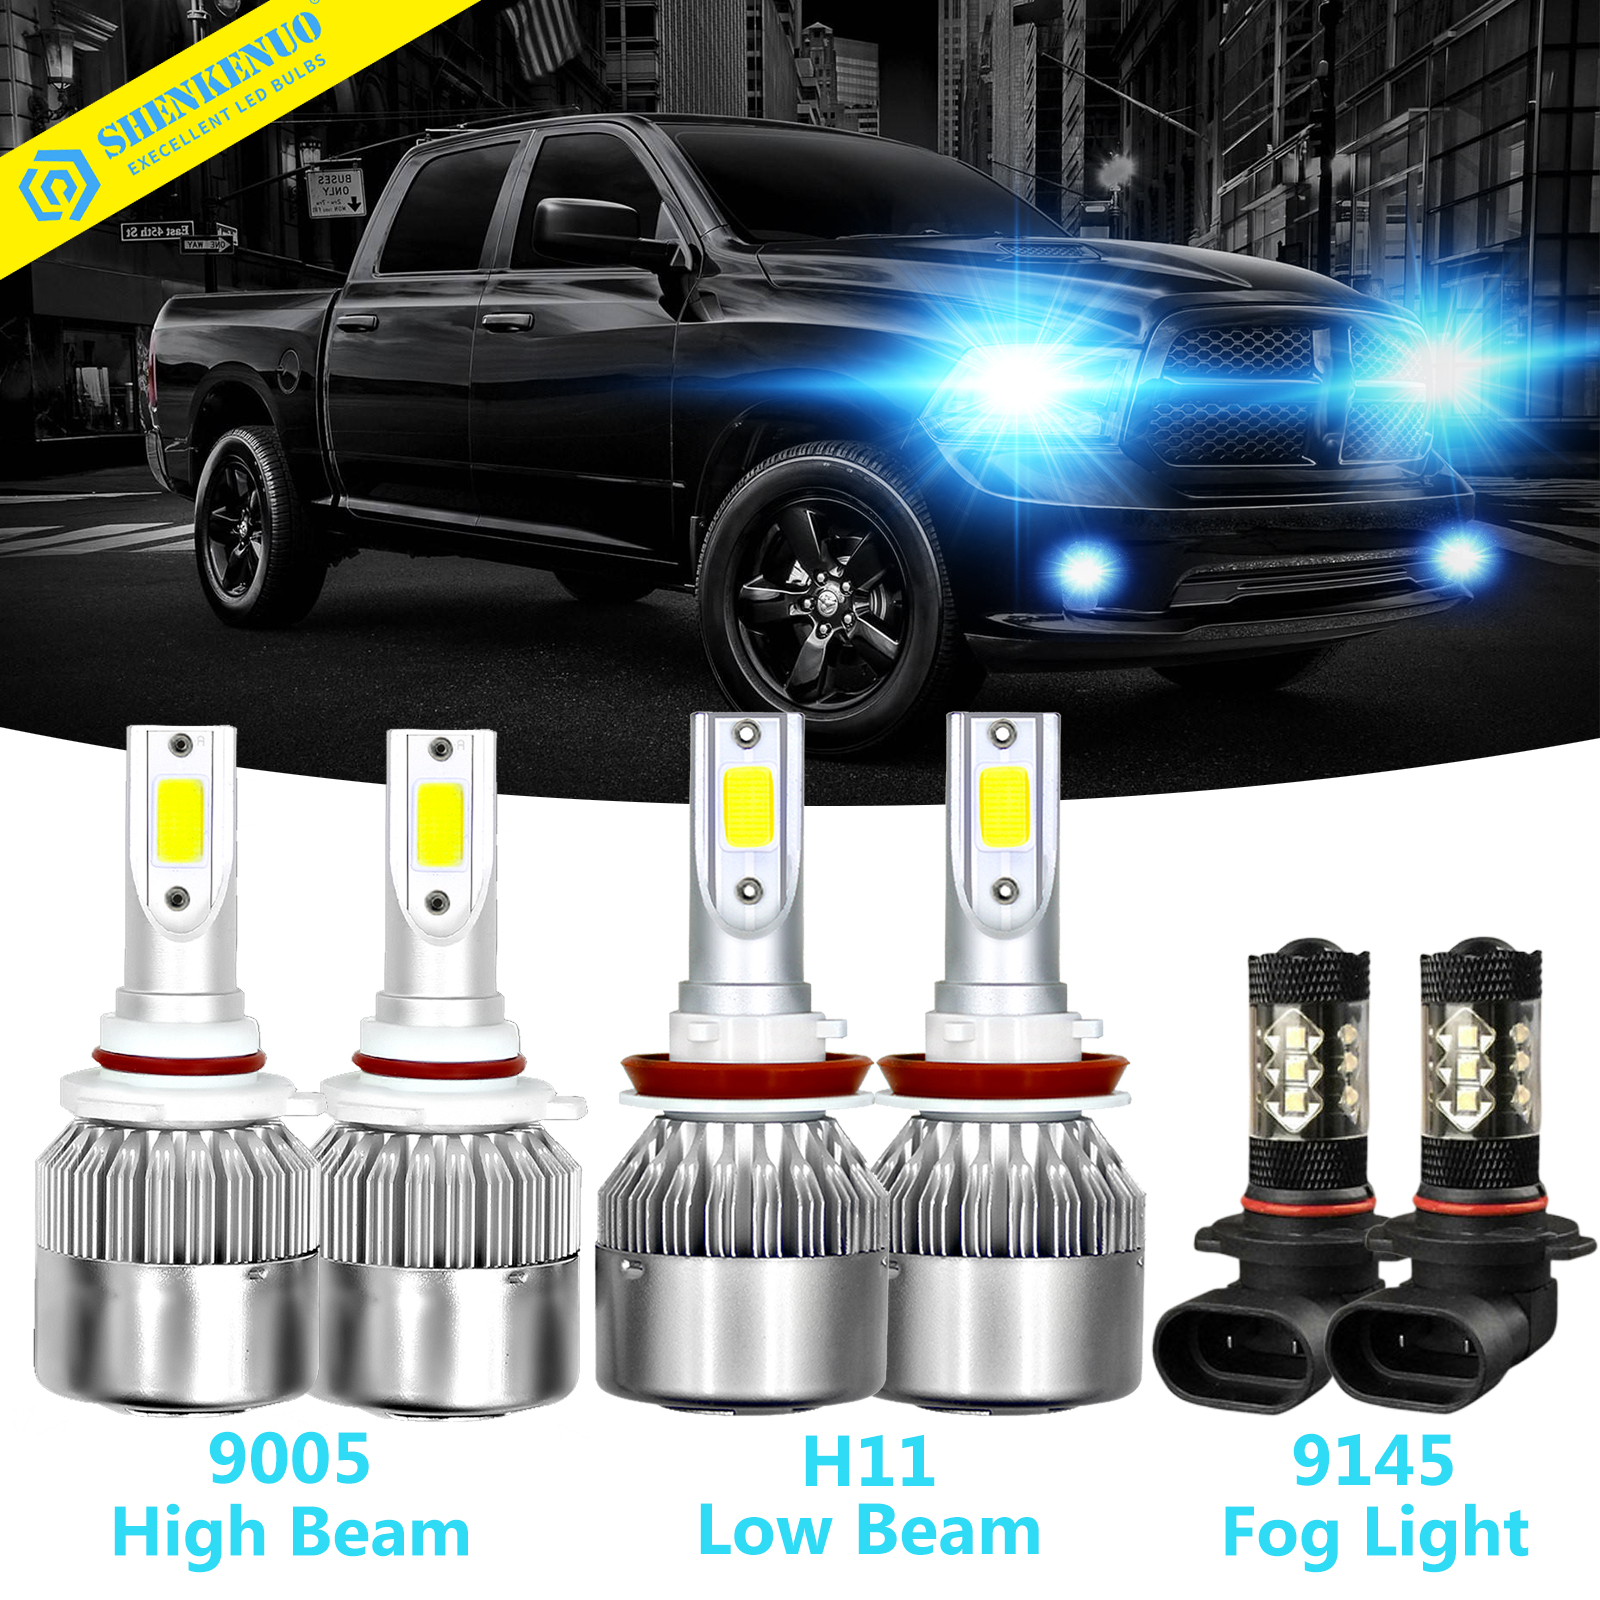 H11 9005 9145 LED Headlight+Fog Bulb for Dodge Ram 1500 2500 3500 2009-2018